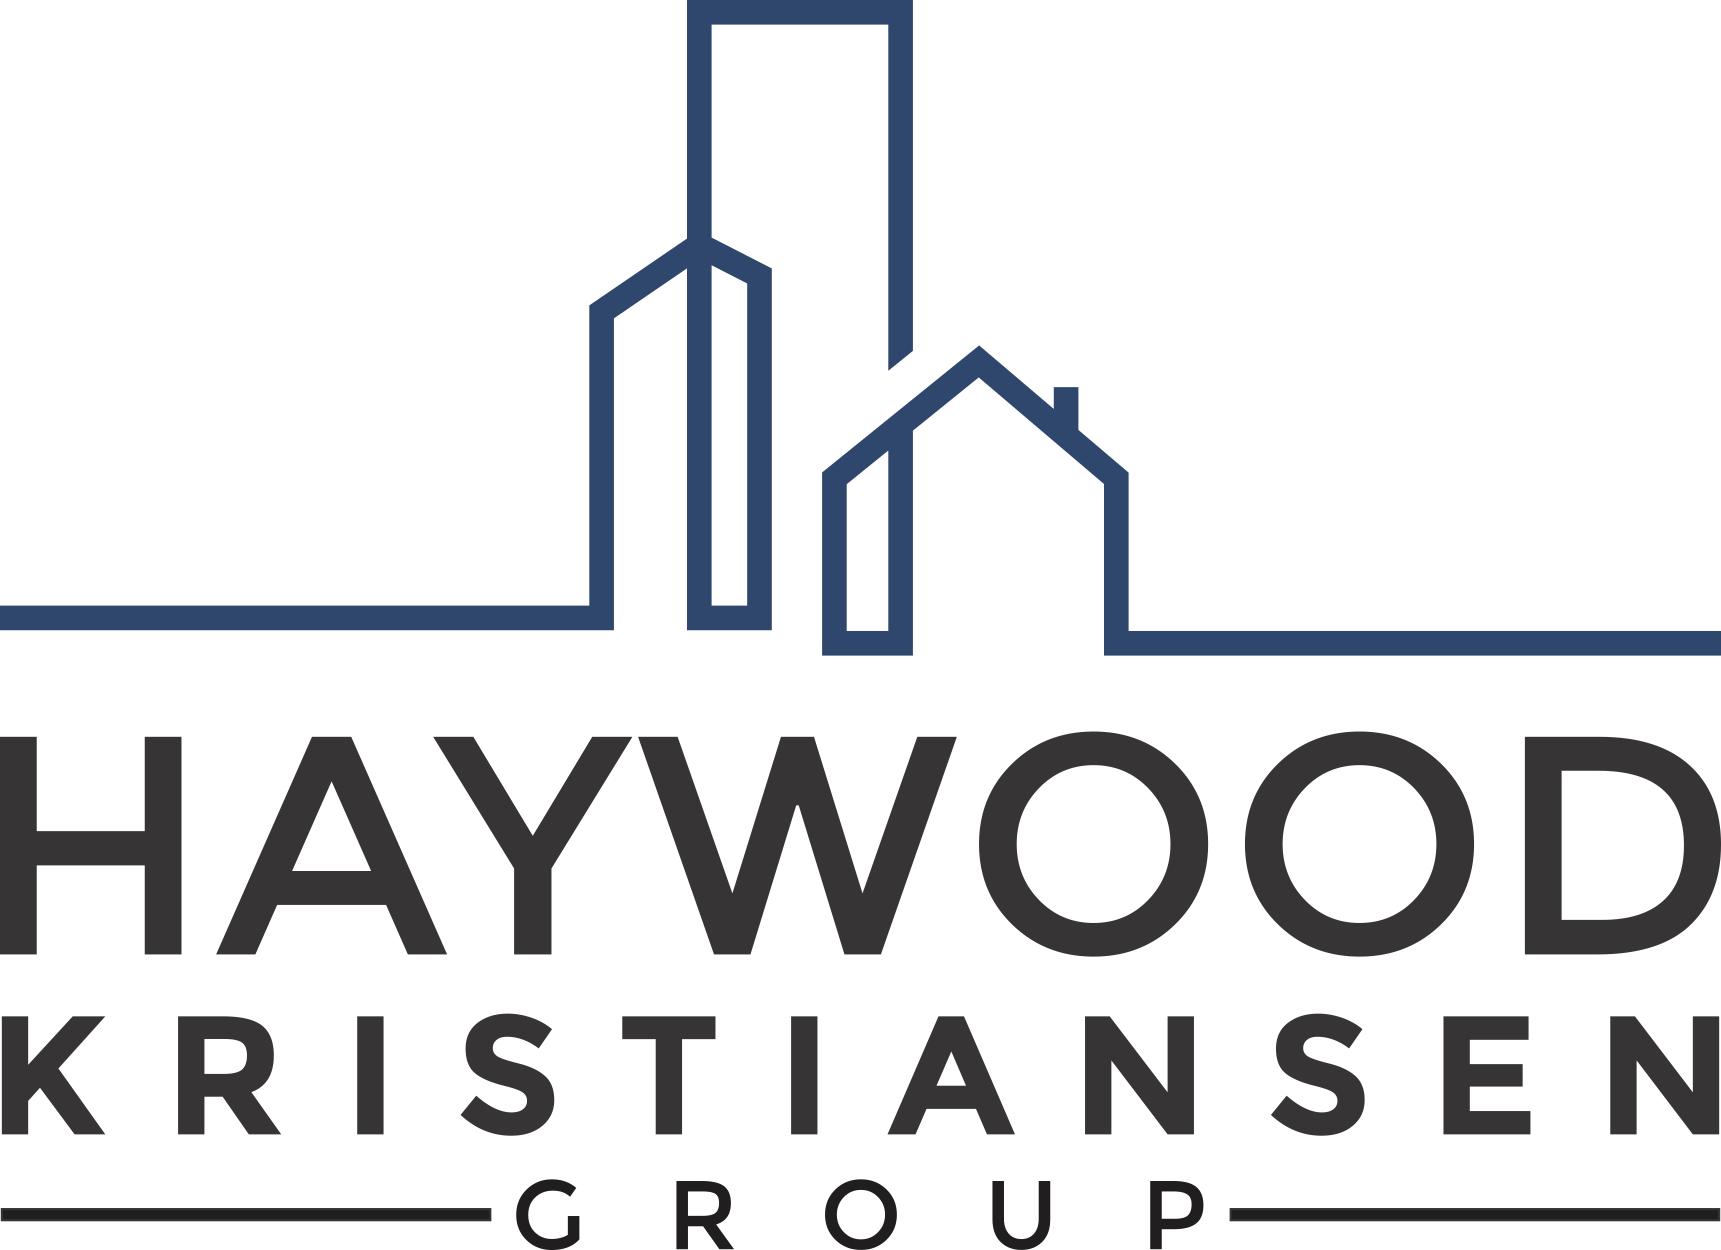 Haywood Kristiansen Group